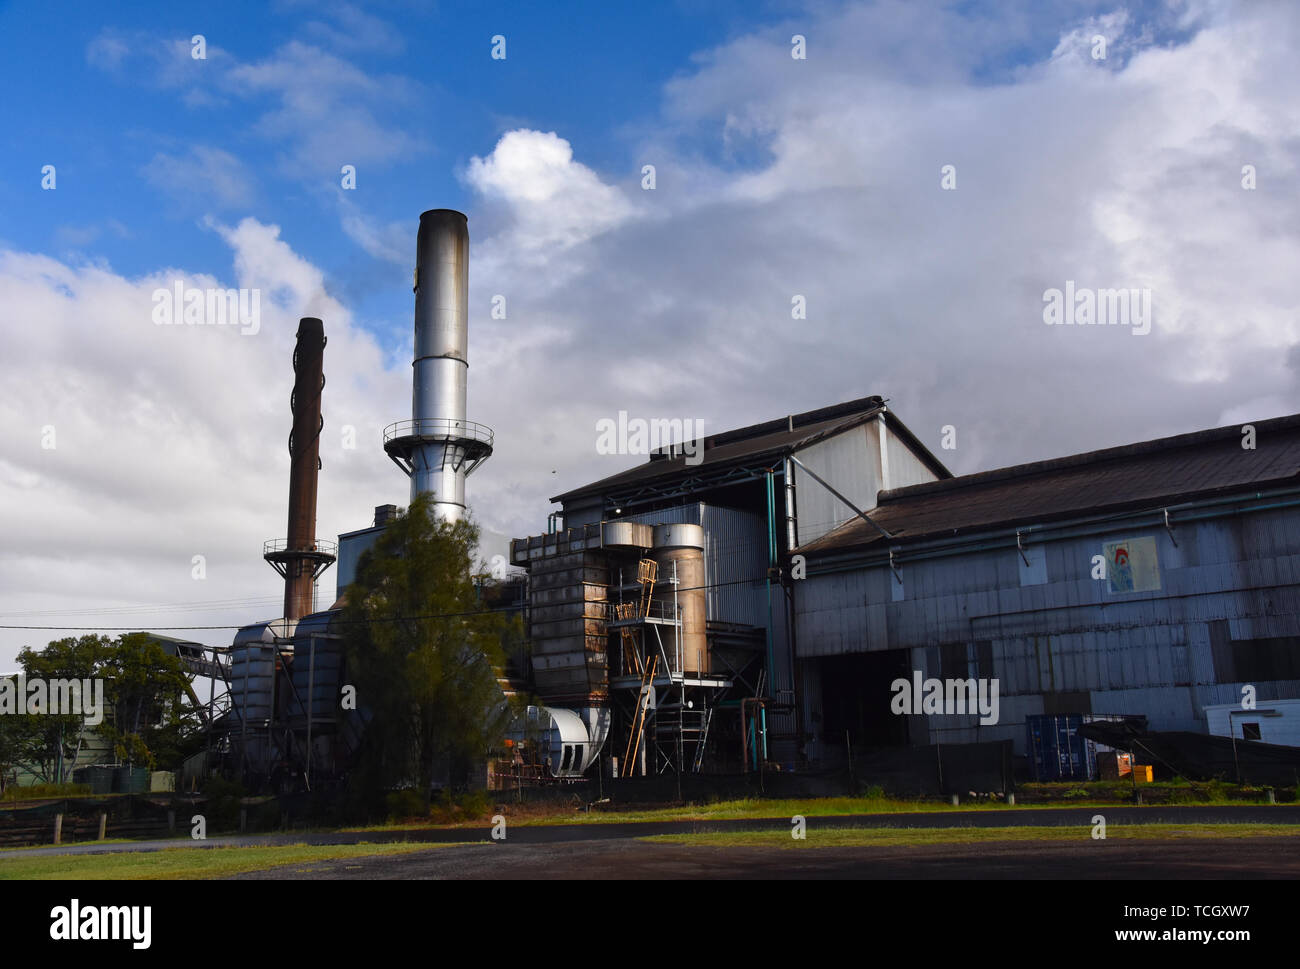 Bundaberg, Australie - Apr 23, 2019. Distillerie de rhum de Bundaberg. Bundaberg Rum est souvent dénommé "Bundy". Banque D'Images